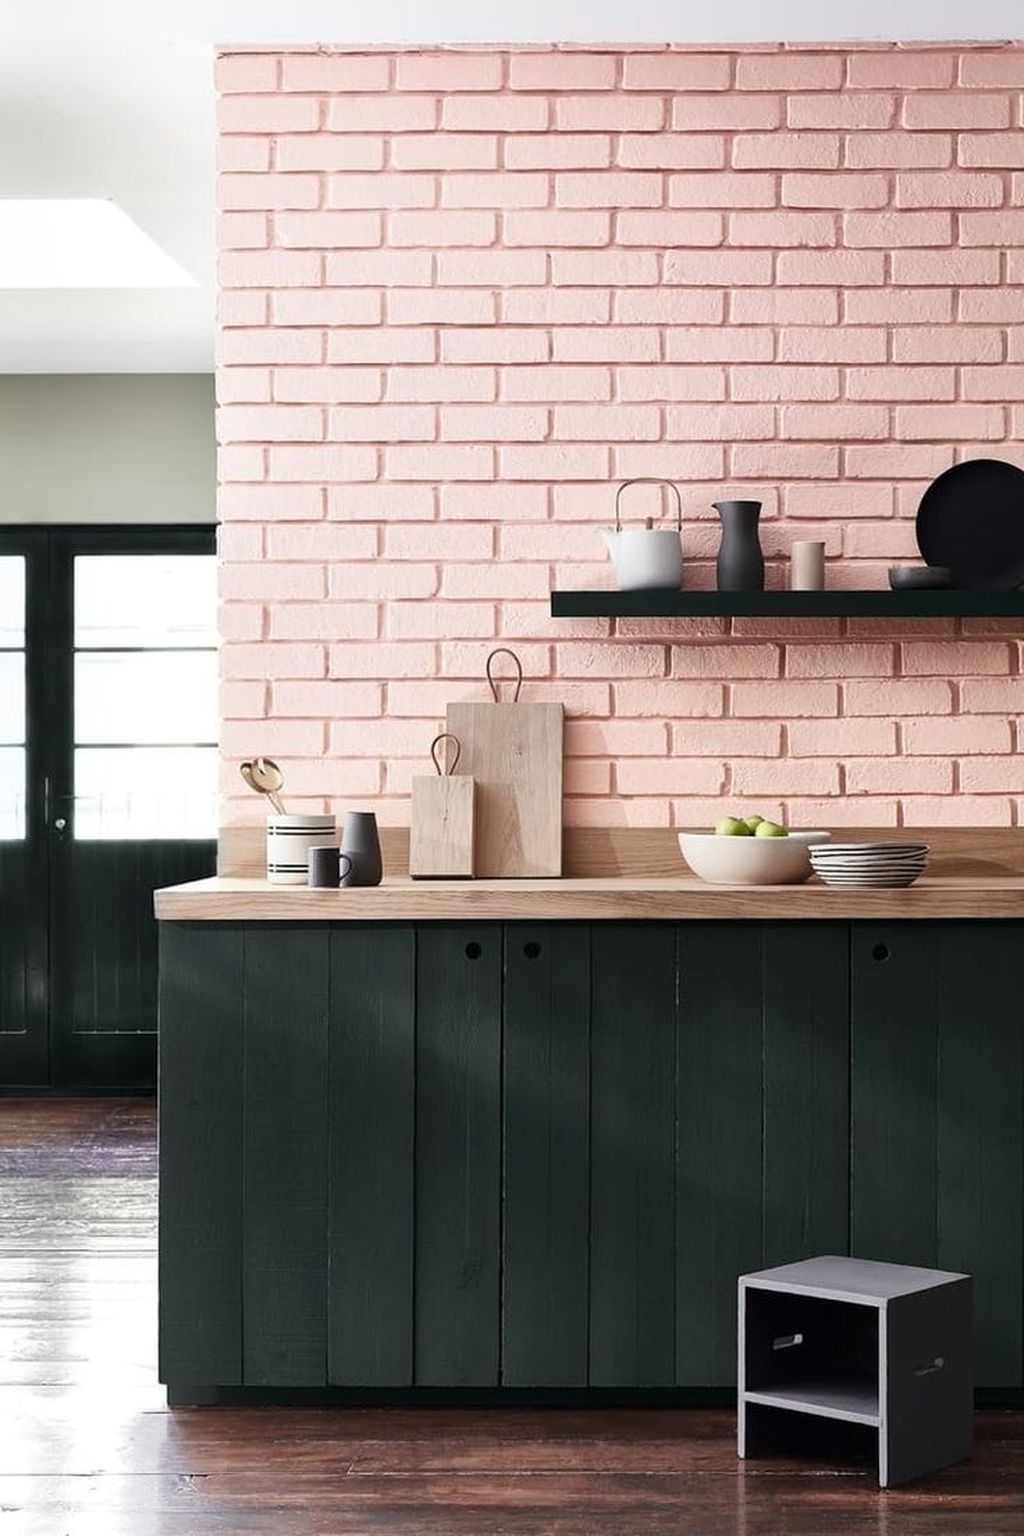 rose blush cuisine mur brique mobilier noir bois - blog déco - clem around the corner